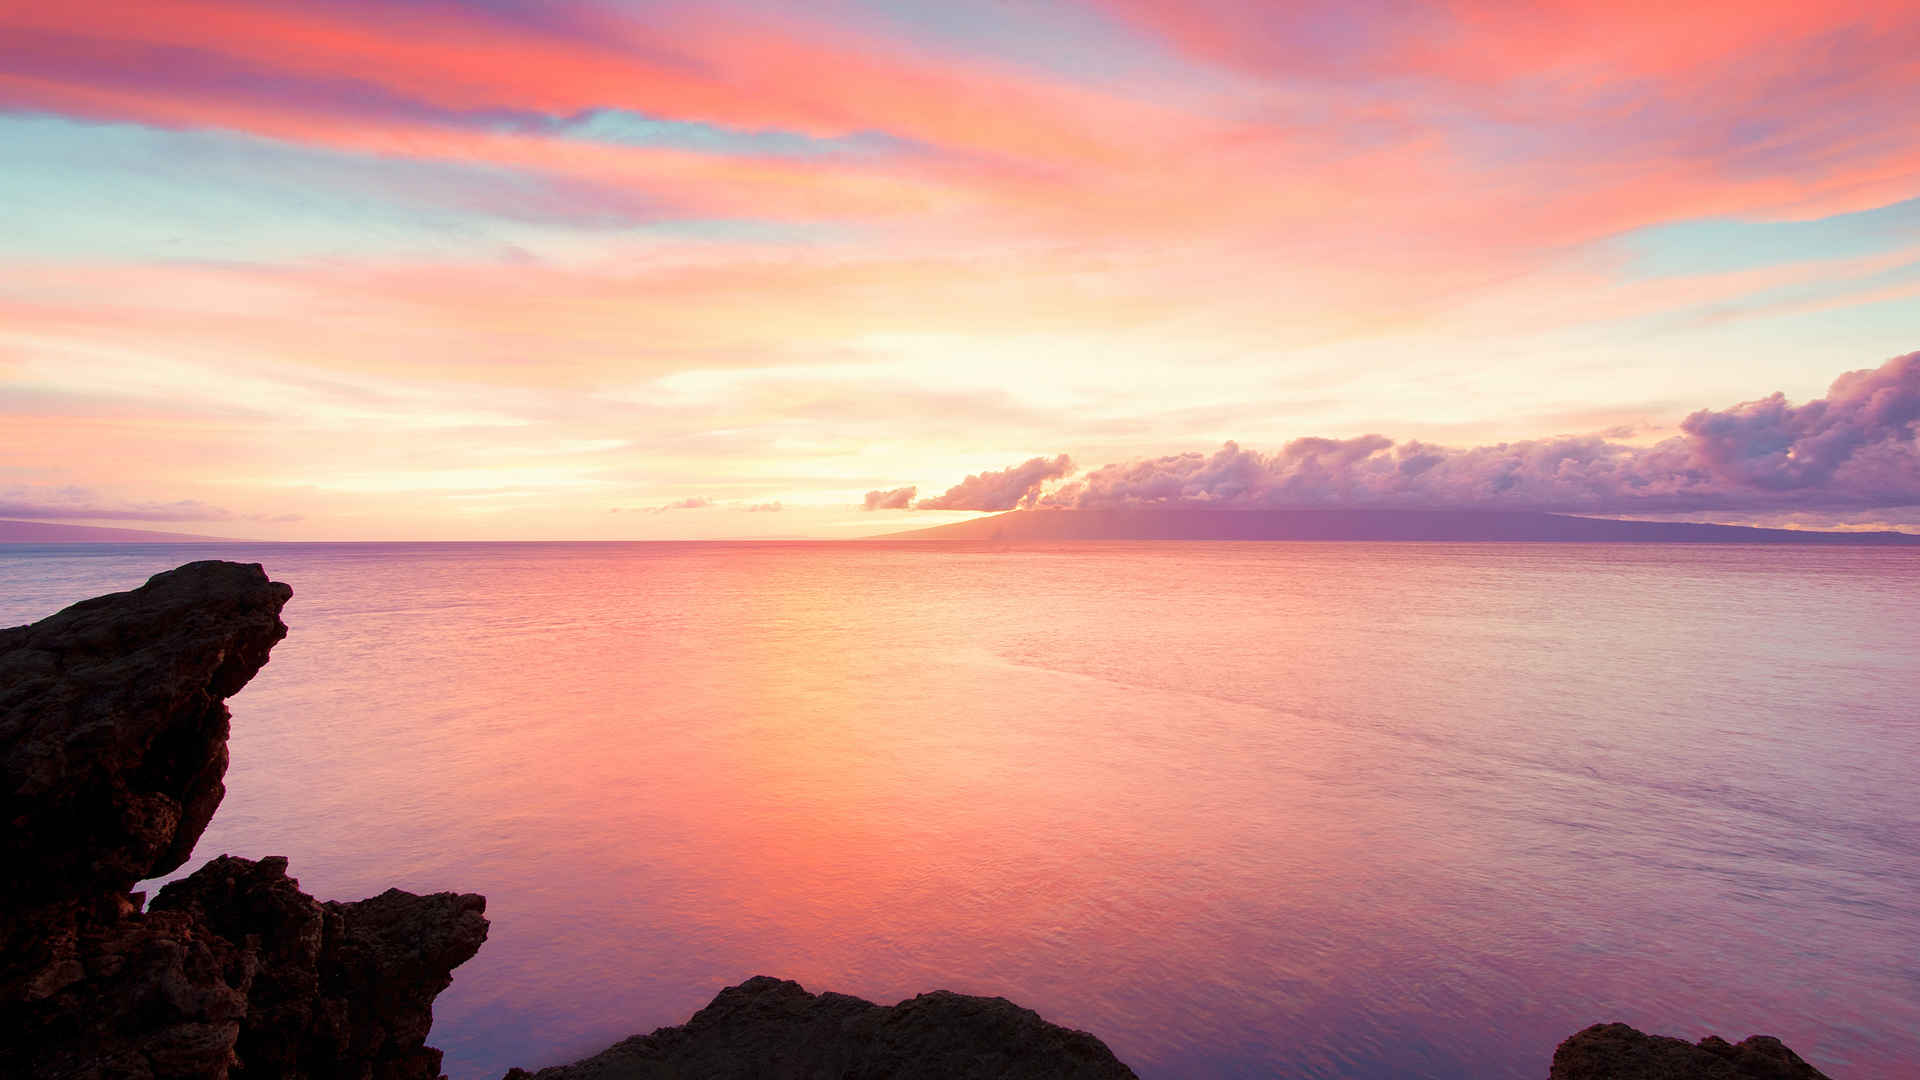 夏威夷毛伊岛海岸日出唯美风景壁纸